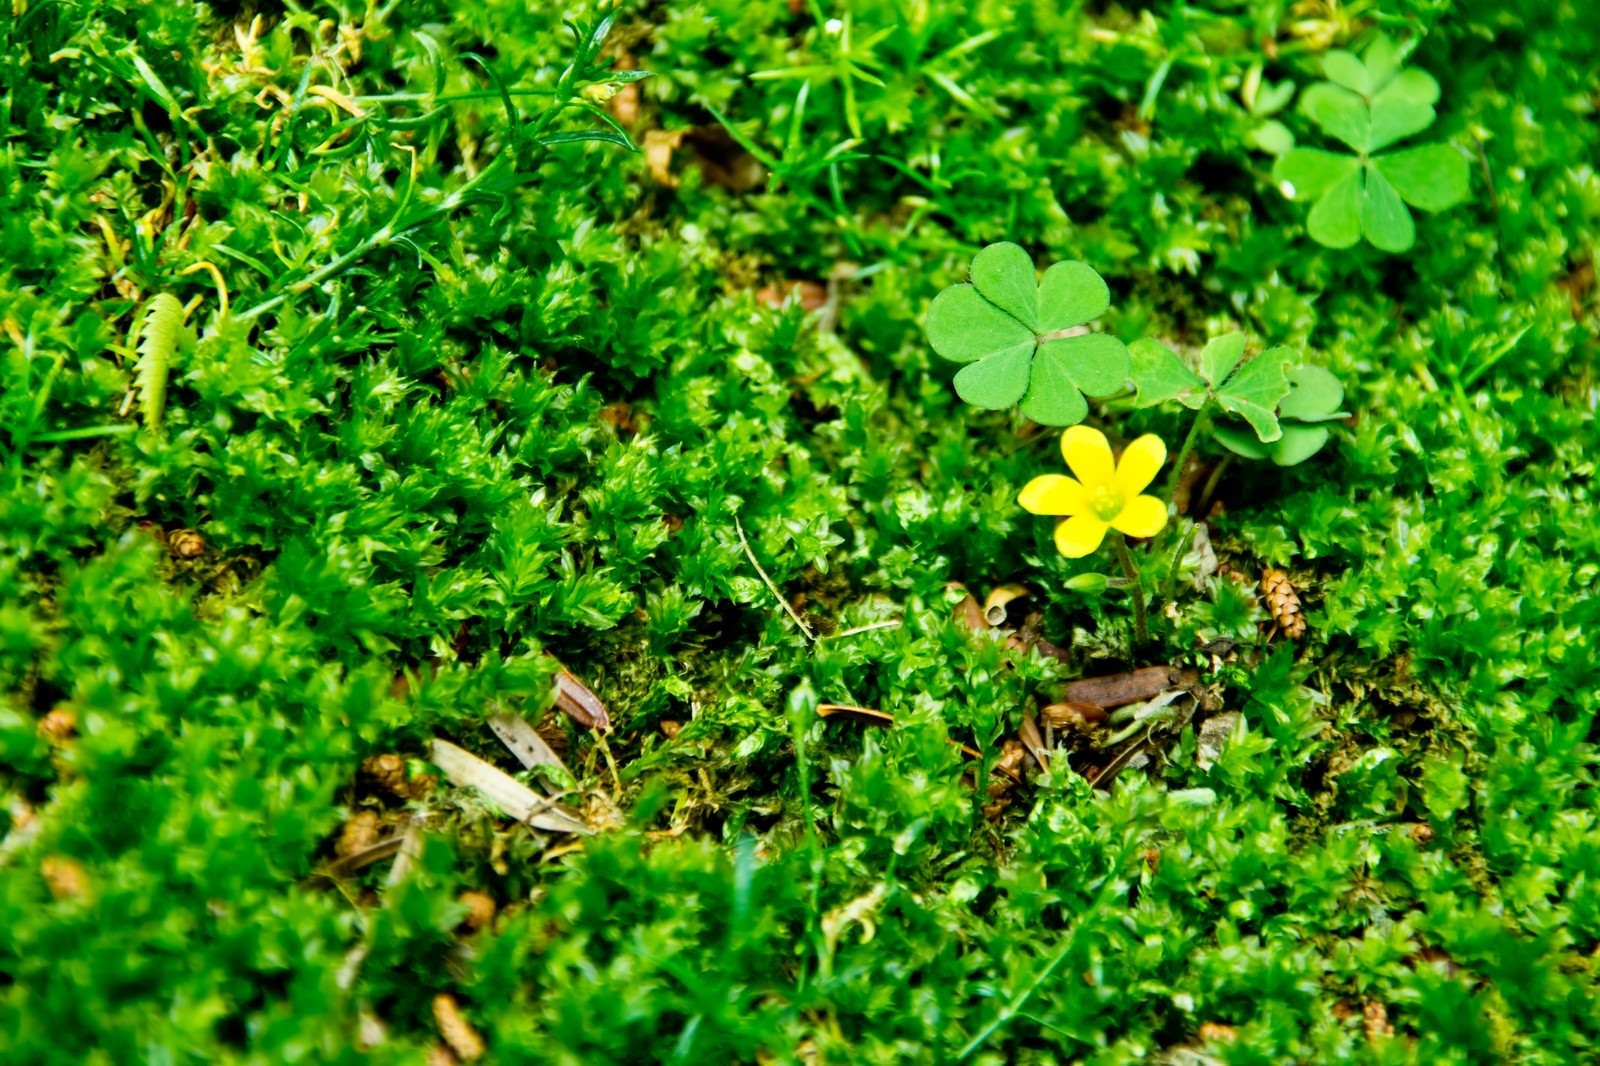 「緑の中の黄色い花」の写真